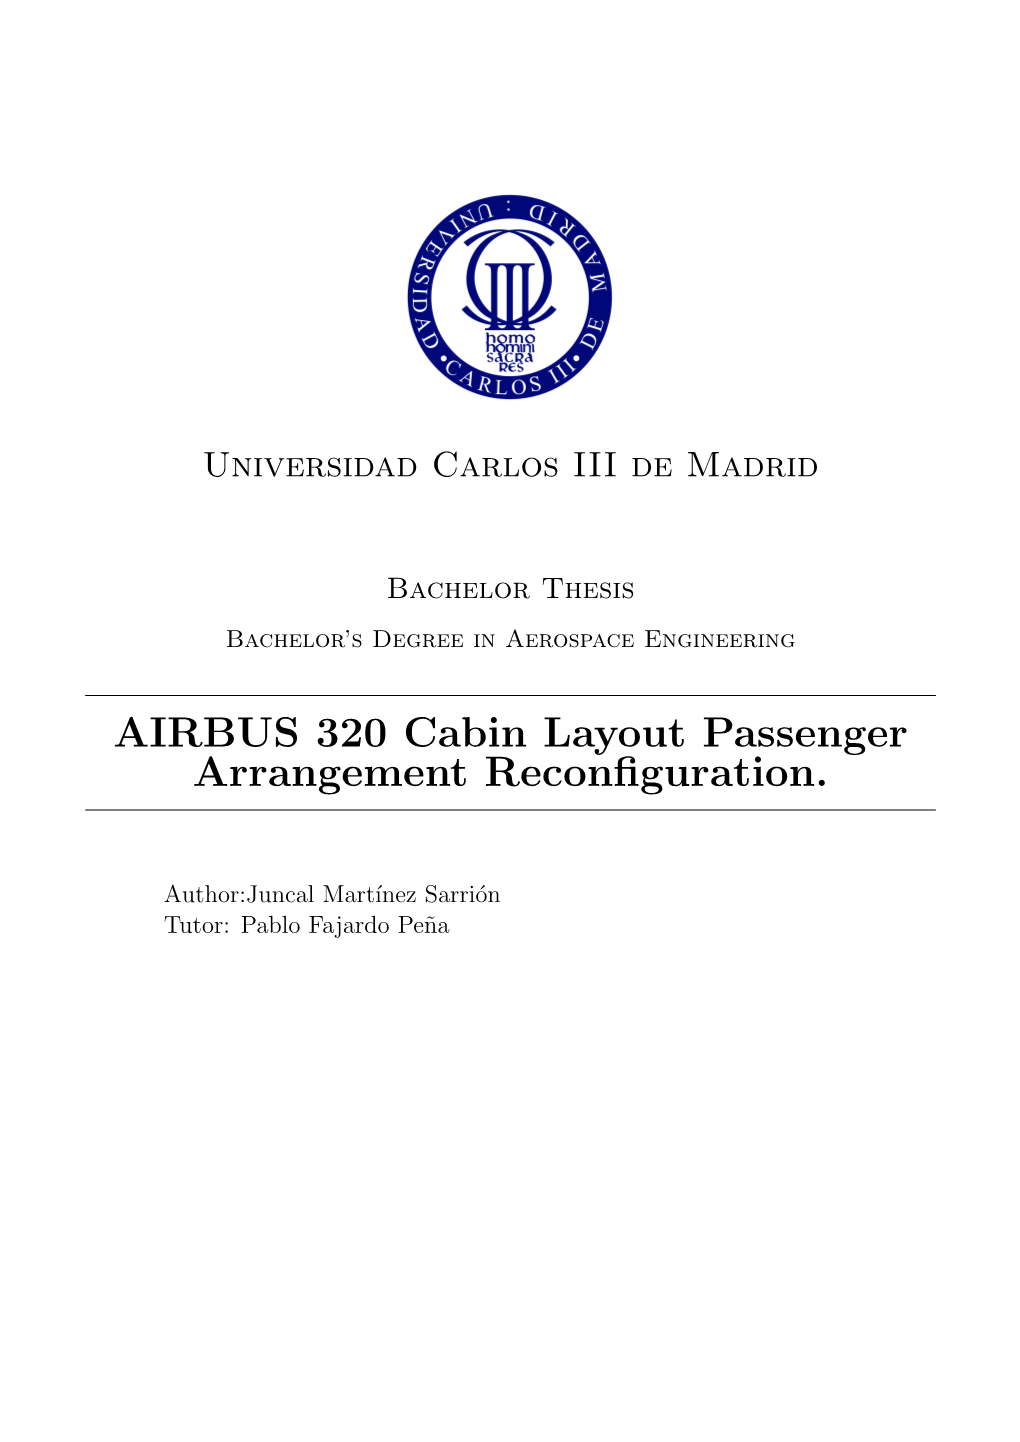 AIRBUS 320 Cabin Layout Passenger Arrangement Reconfiguration